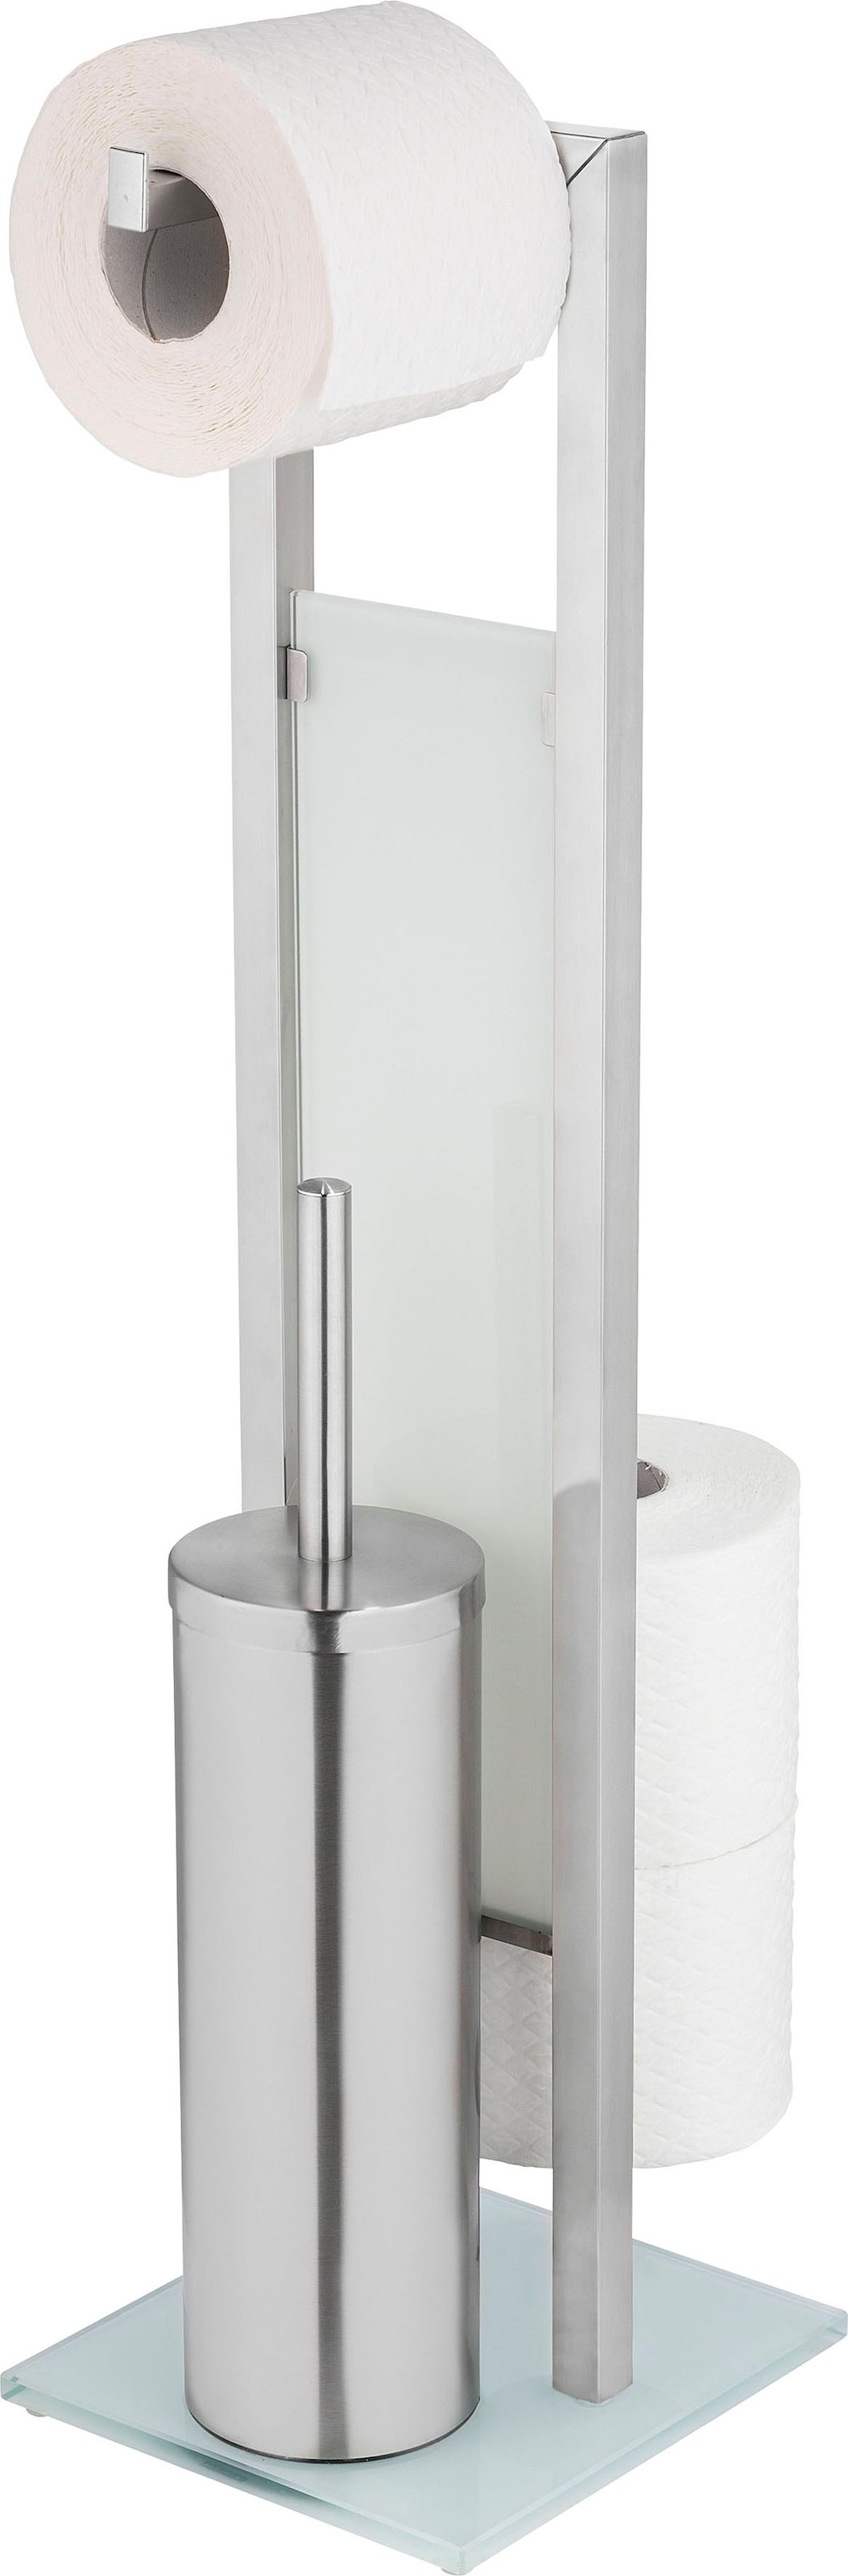 WENKO WC-Garnitur »Rivalta«, aus Edelstahl-Glas-Polypropylen, edelstahl, mit Toilettenpapier- und Ersatzrollenhalter